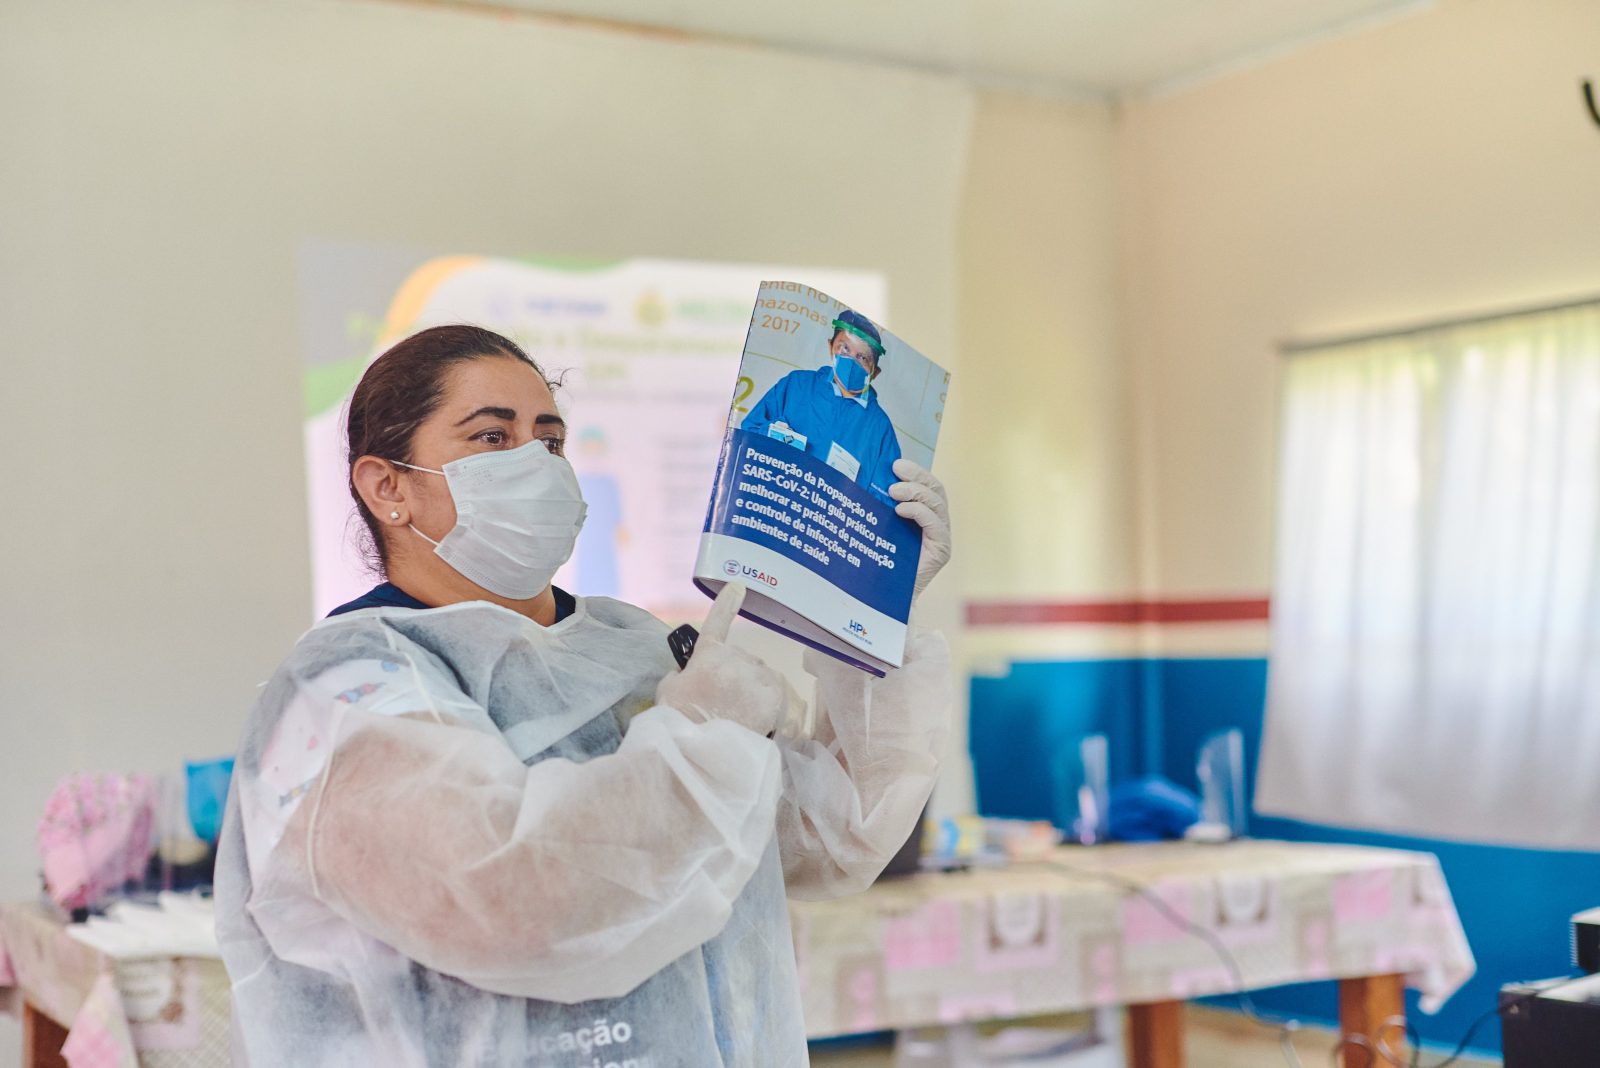 Enfermeira apresentando material de prevenção e proteção ao COVID19, produzido USAID para comunidade no Amazonas.